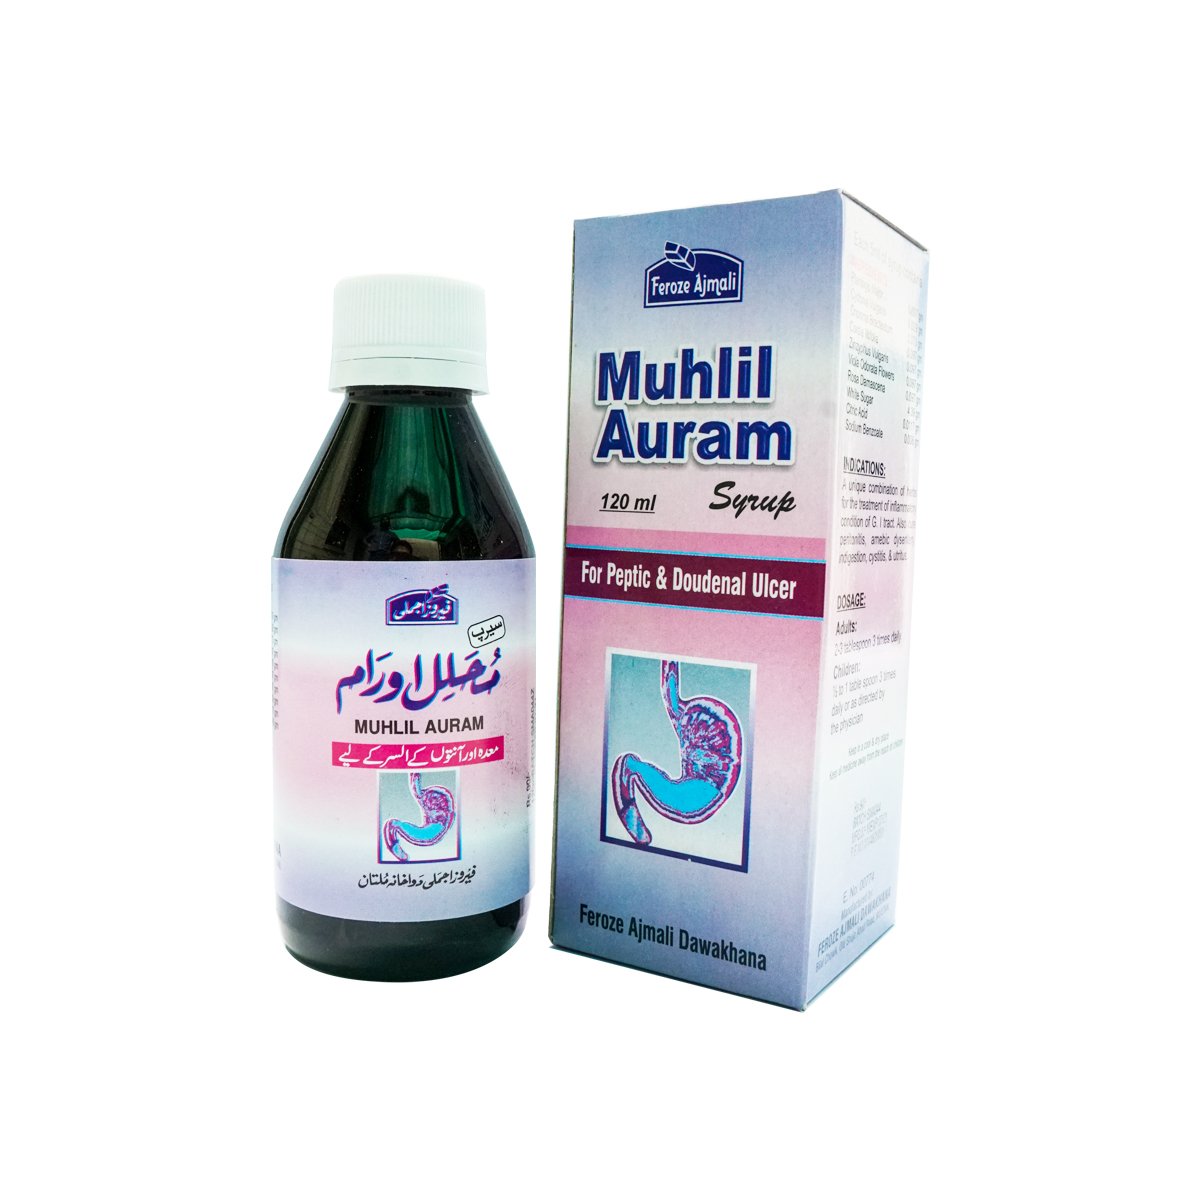 Muhlil Auram Syrup-image